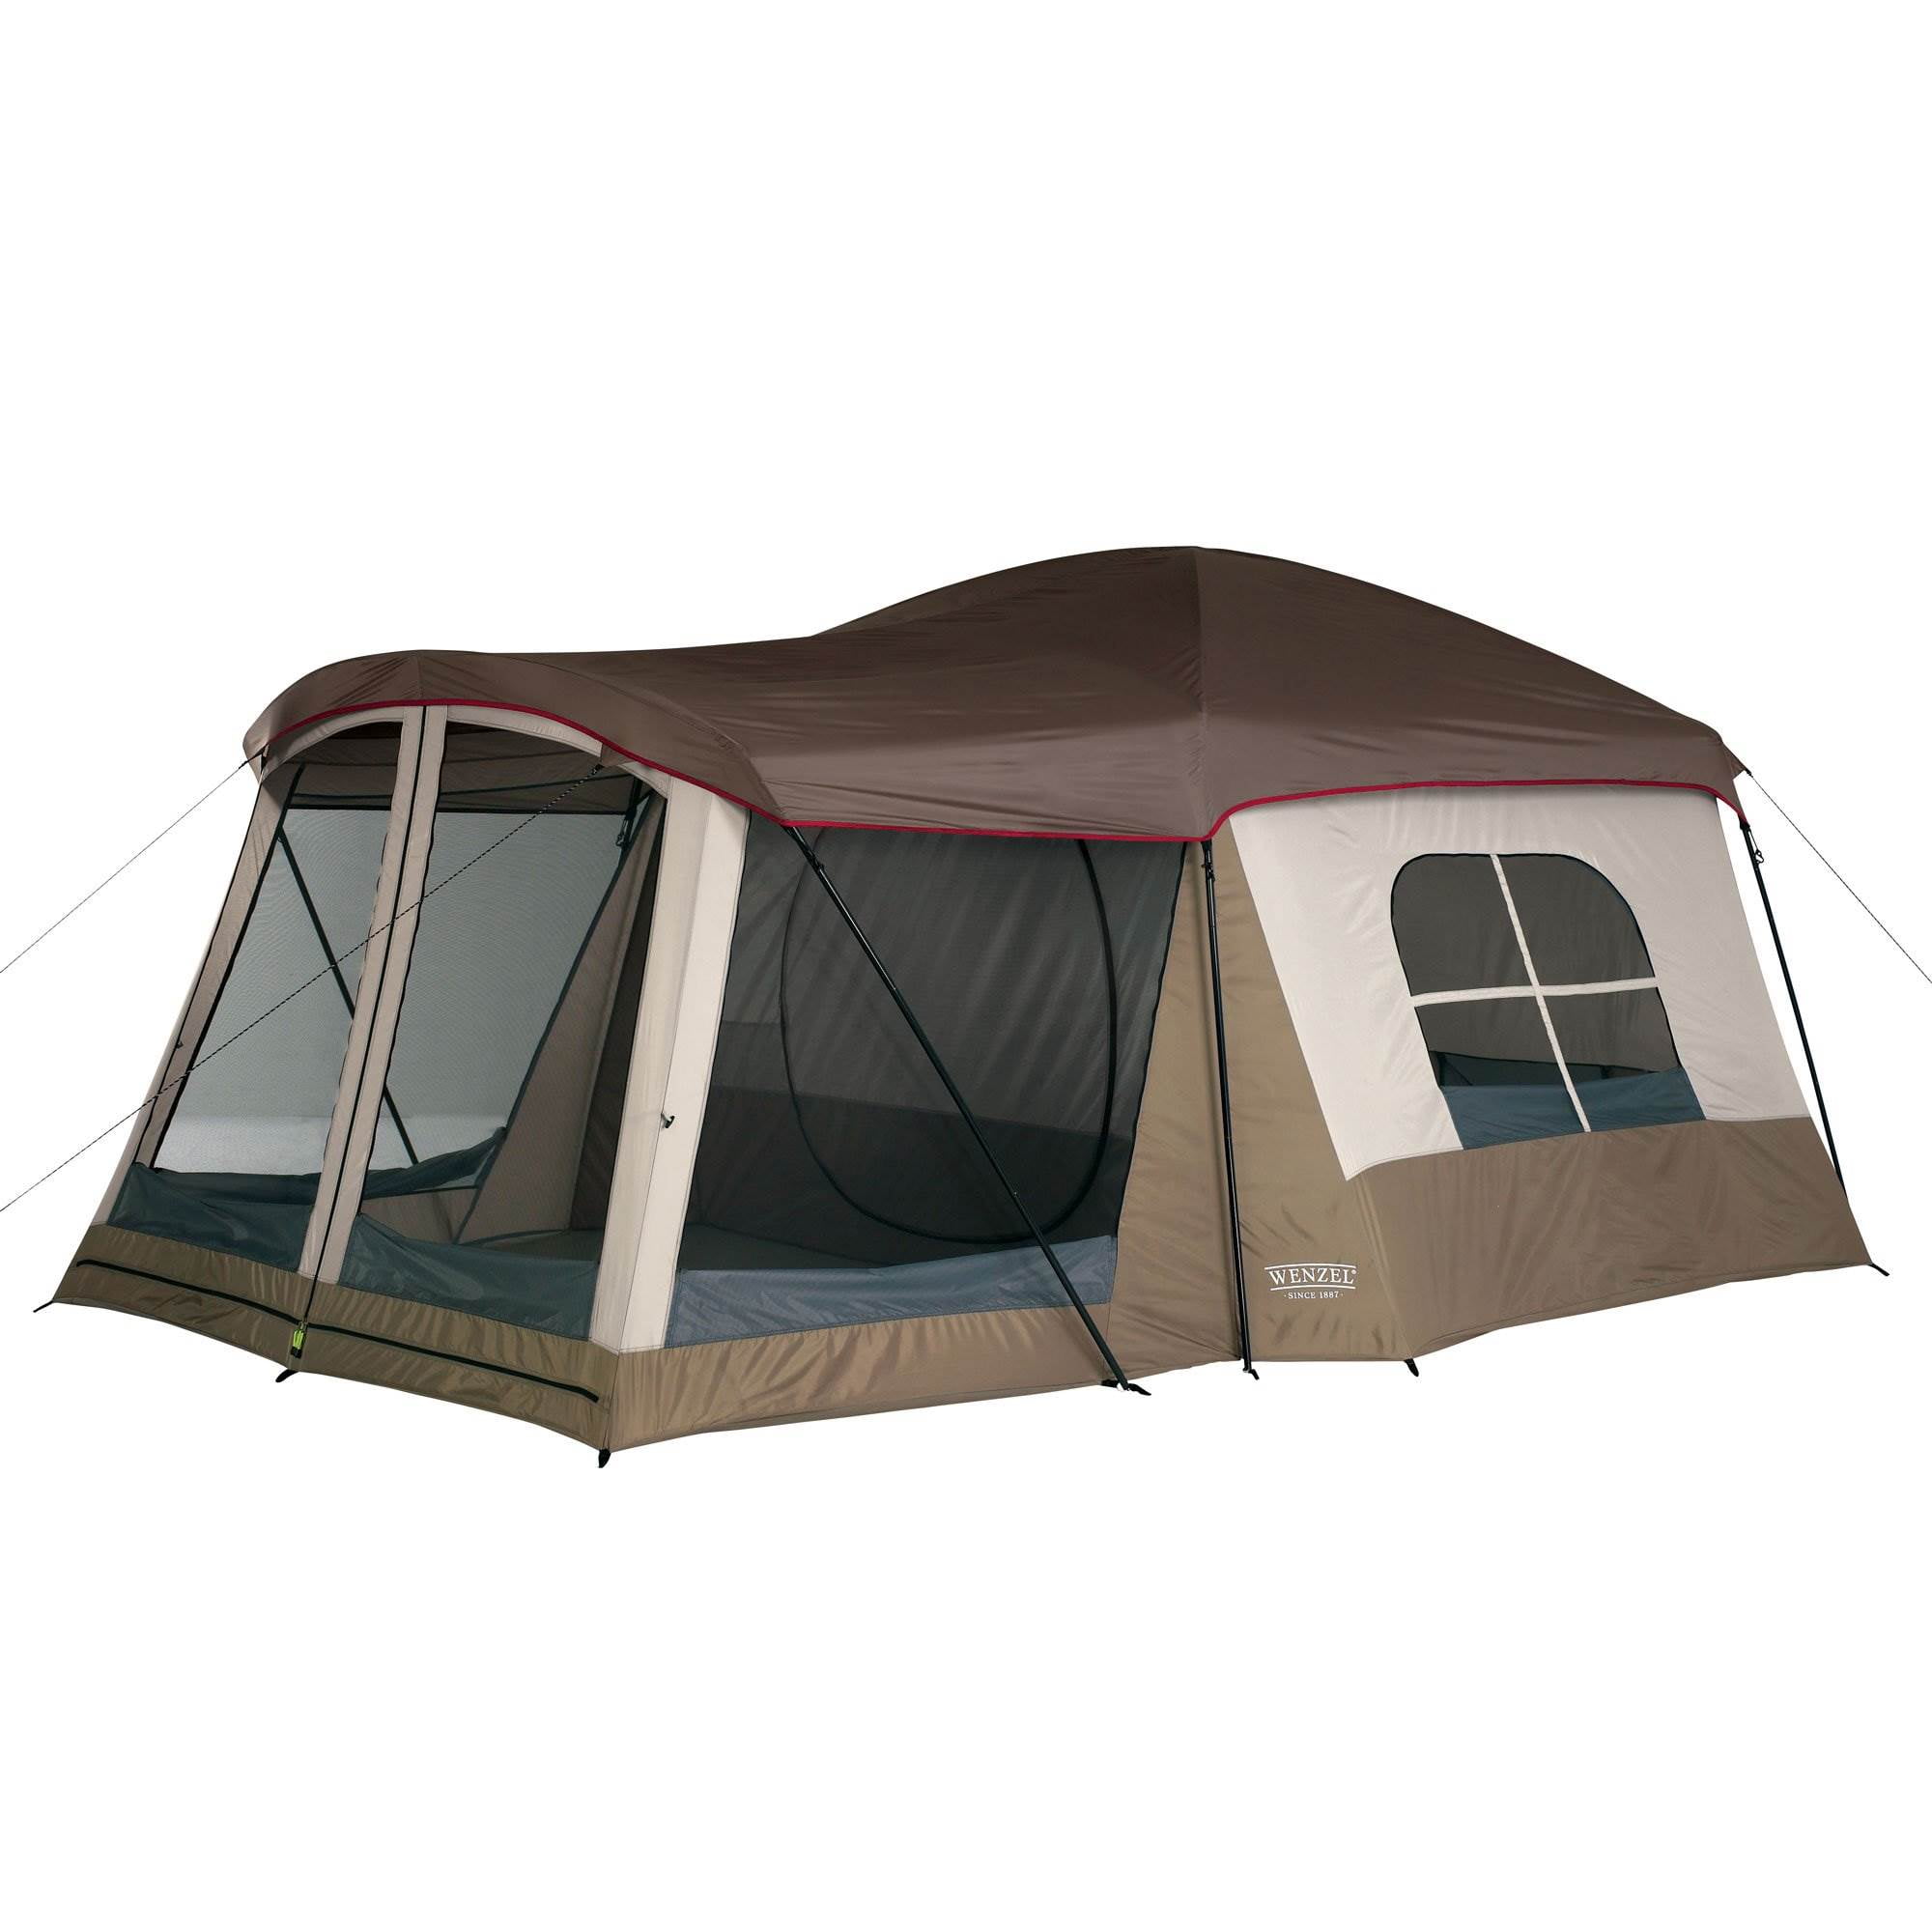 Рейтинг палаток туристических на 4 человека. Палатка Outdoor Tent 5м 2513. Тент-палатка Taumann Camping House. Палатка papallona Delta Cabin PP-206. Палатка Camping Tents 2905.